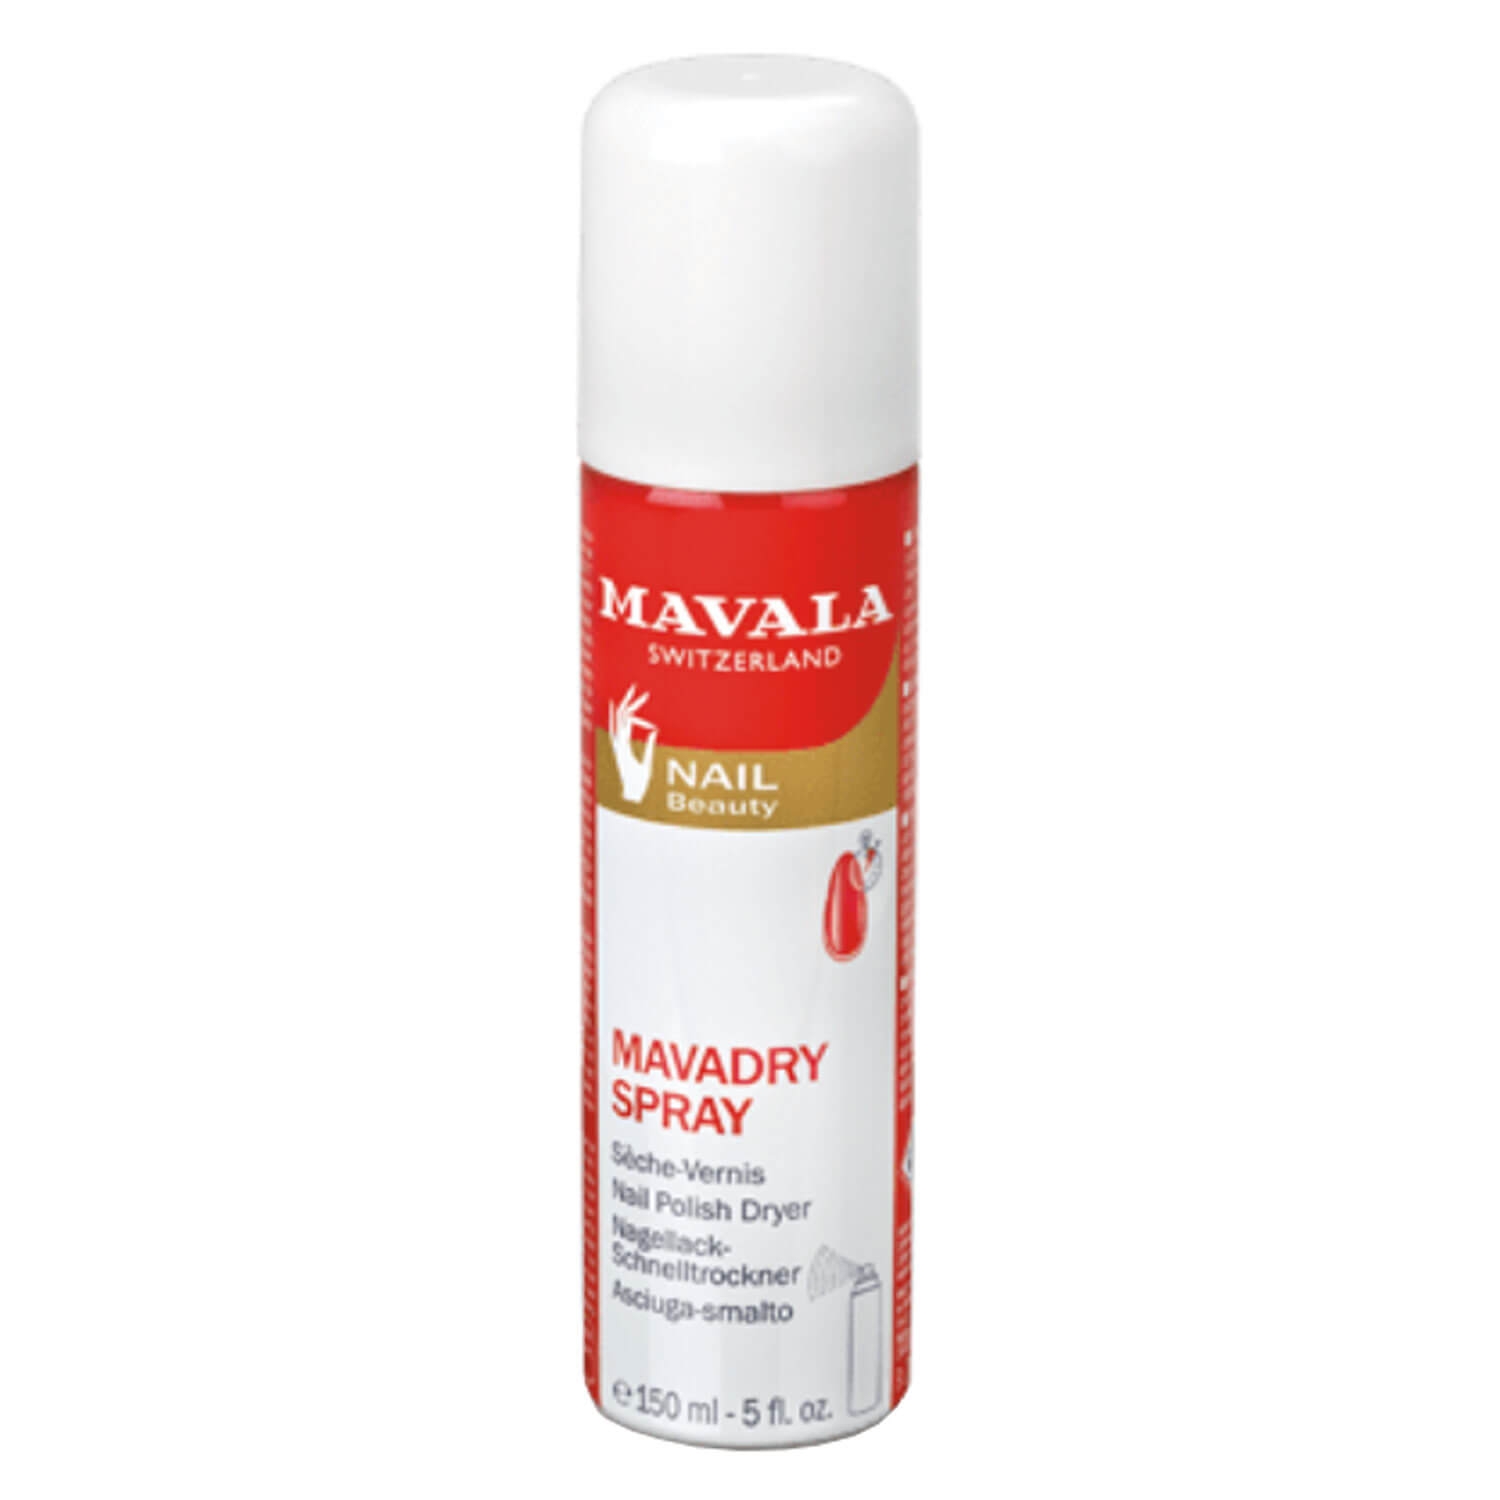 Product image from MAVALA Care - Mavadry Spray